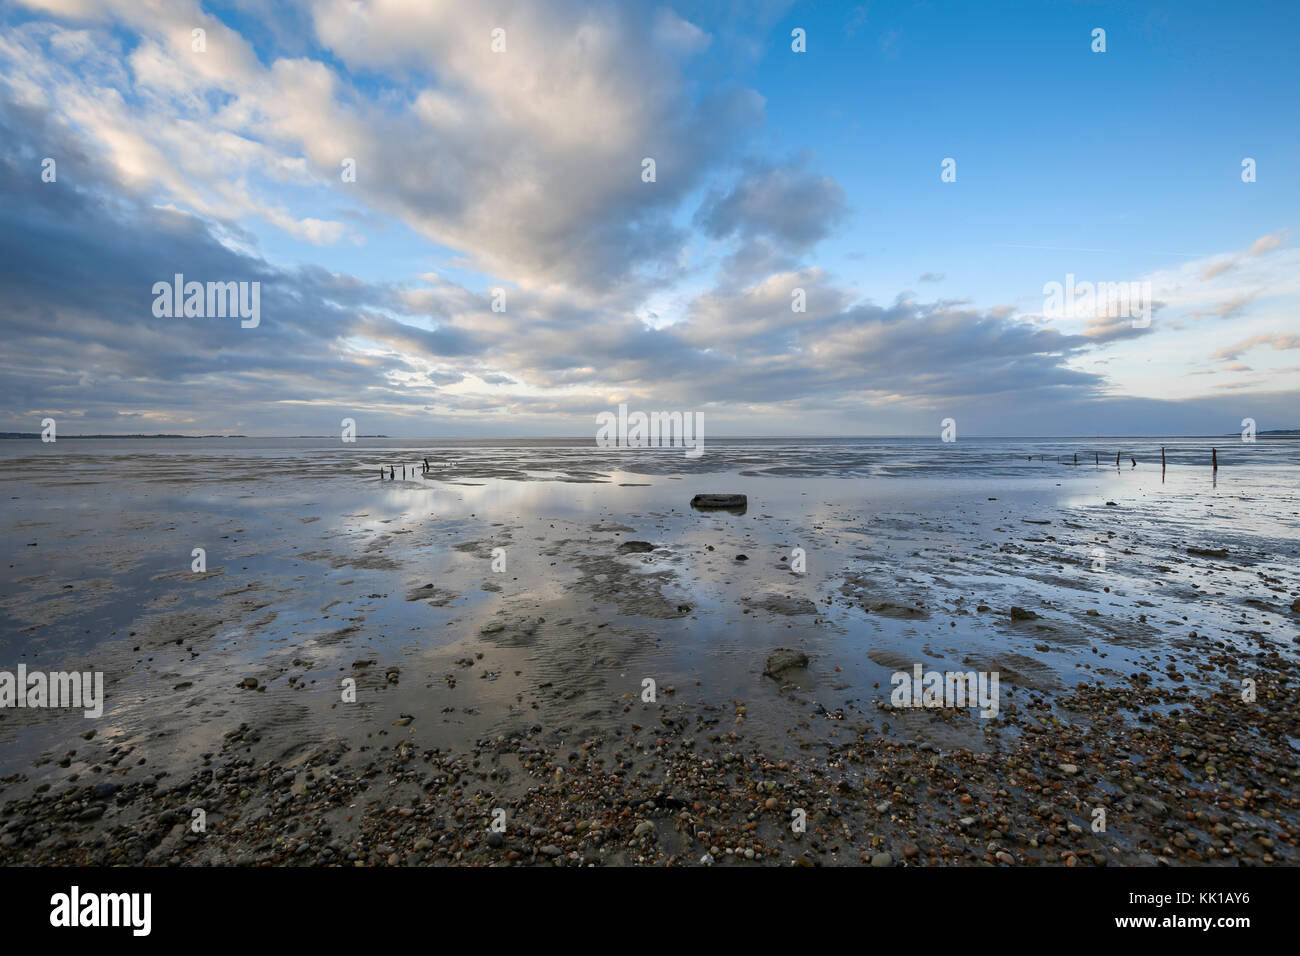 Interessante nuvole riflettono in pozze di acqua a bassa marea, Seasalter beach, whitstable kent, Regno Unito, guardando attraverso il Swale estuario. Foto Stock